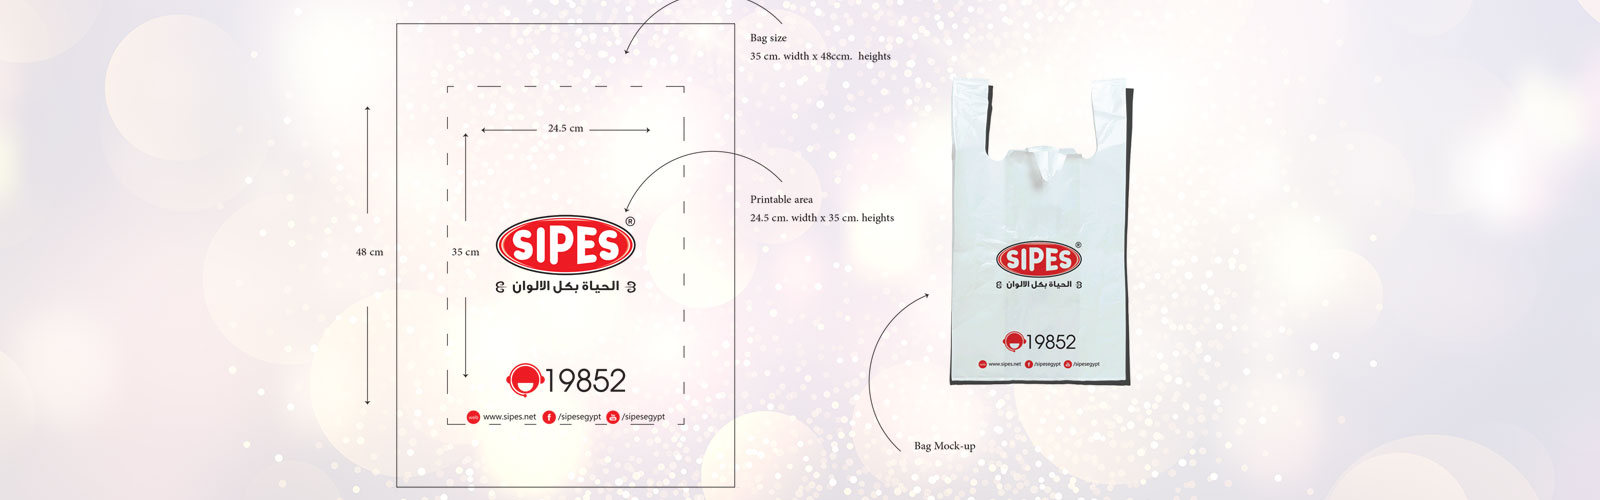 Sipes plastic bag design by Qomsa